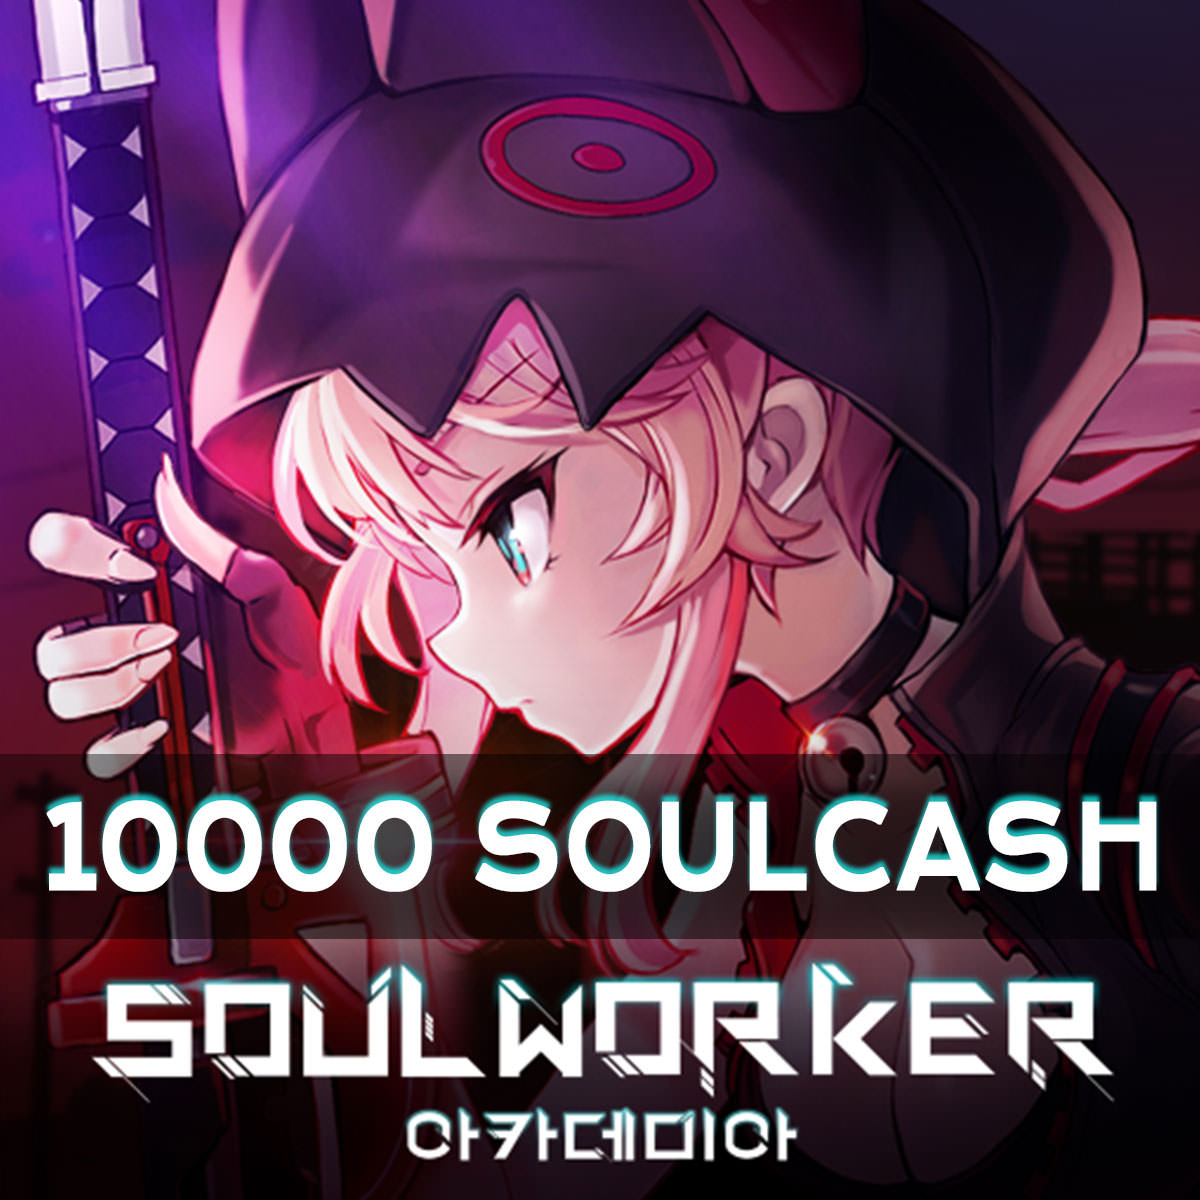 Soulworker 10000 SoulCash